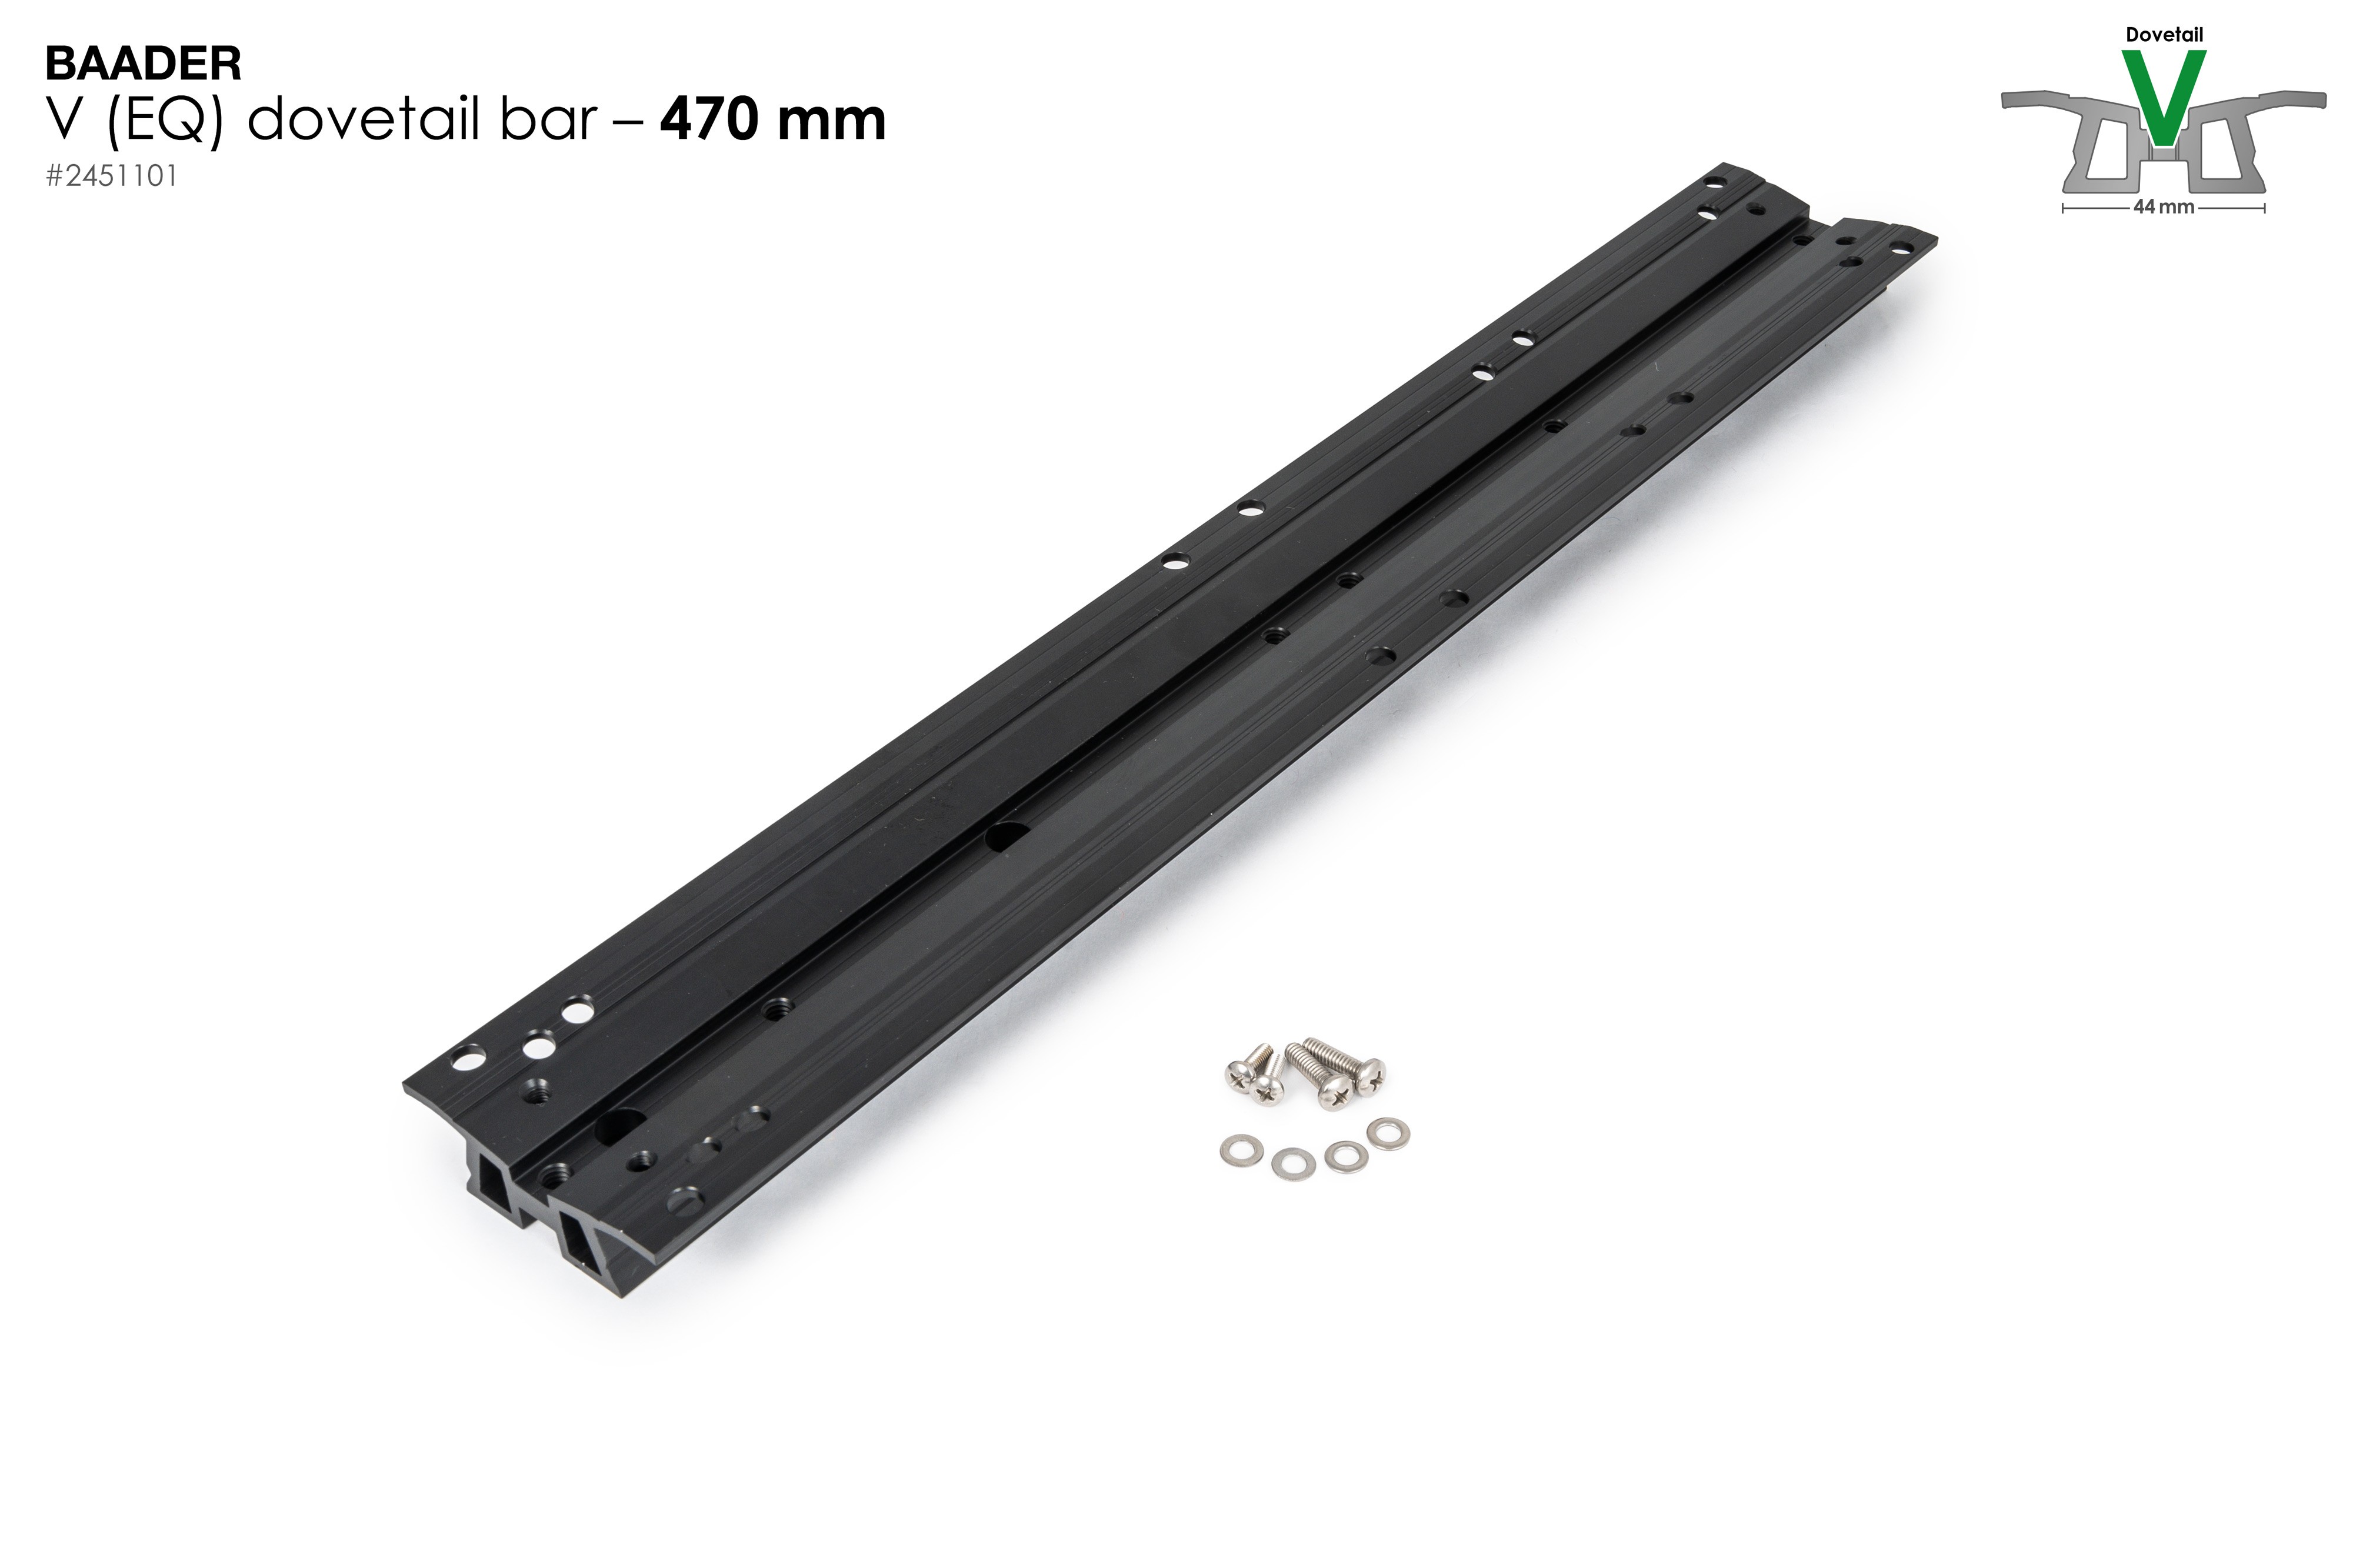 Baader V rail / dovetail bar 470mm for SC